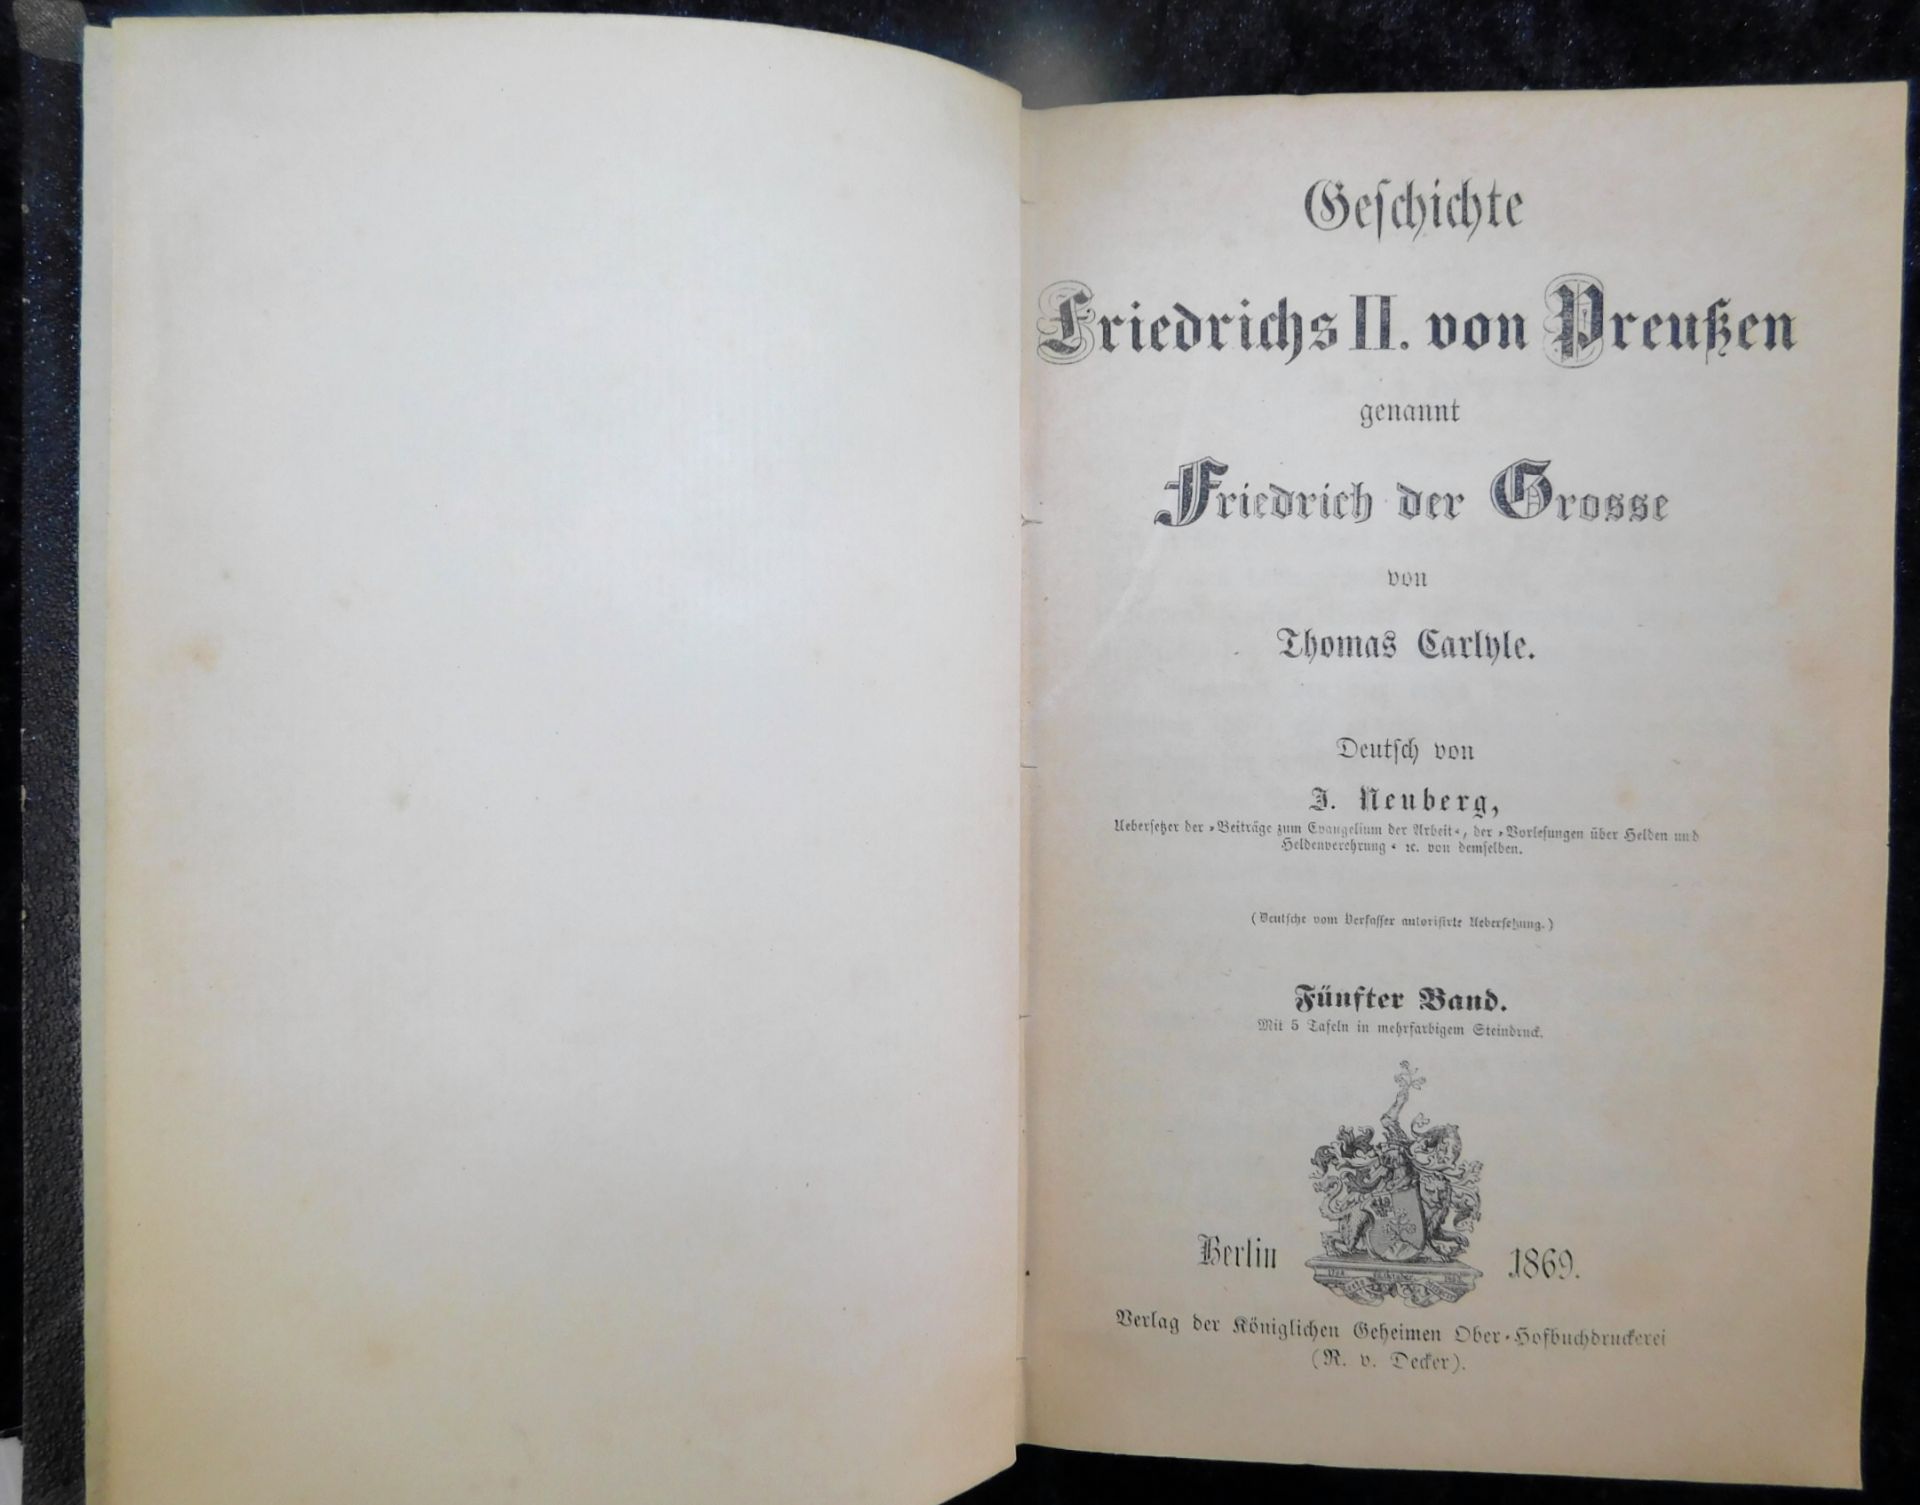 Friedrich der Große, 5 Bände, Thomas Carlyle, Verlag R. Decker, Berlin 1863 - Image 6 of 6